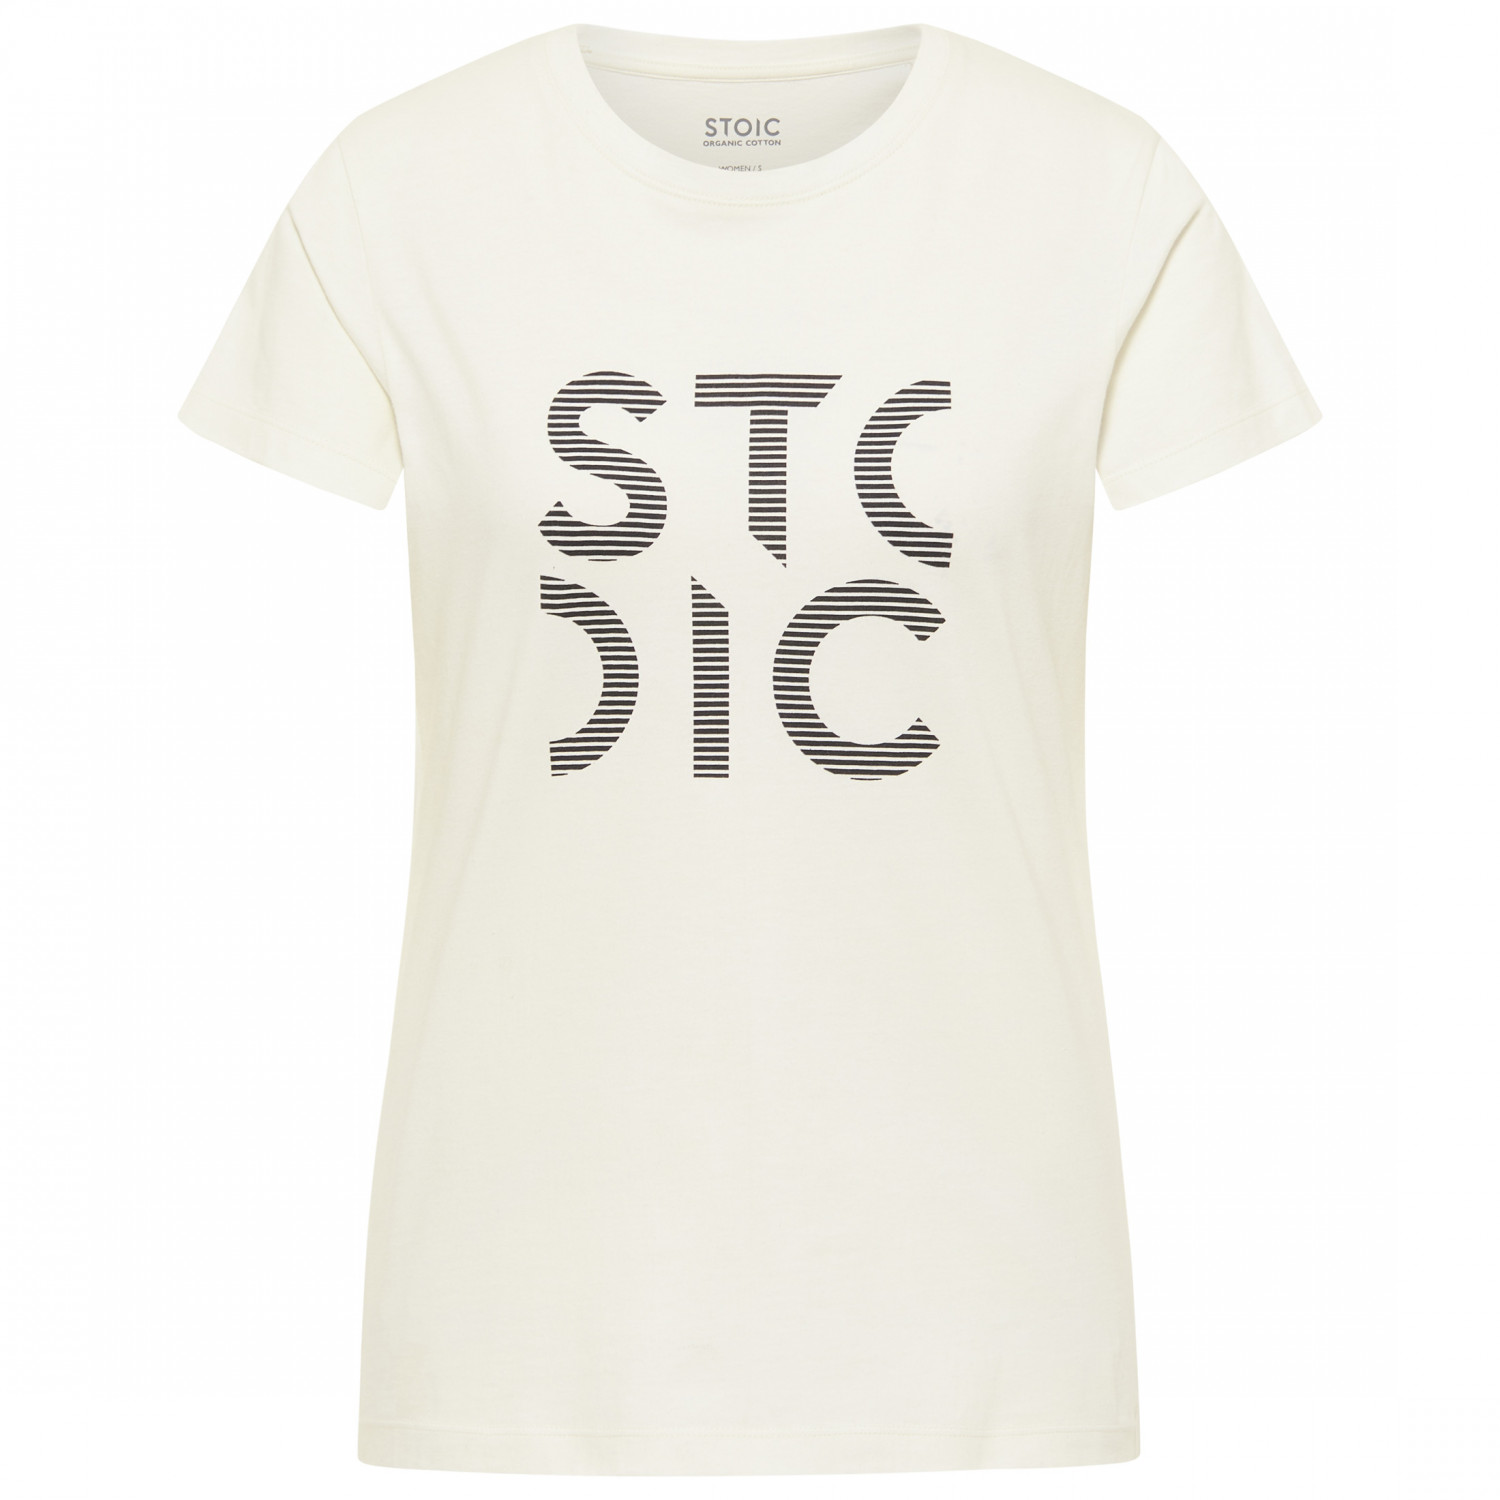 Футболка Stoic Women's Organic Cotton HeladagenSt S/S, цвет Blanc White